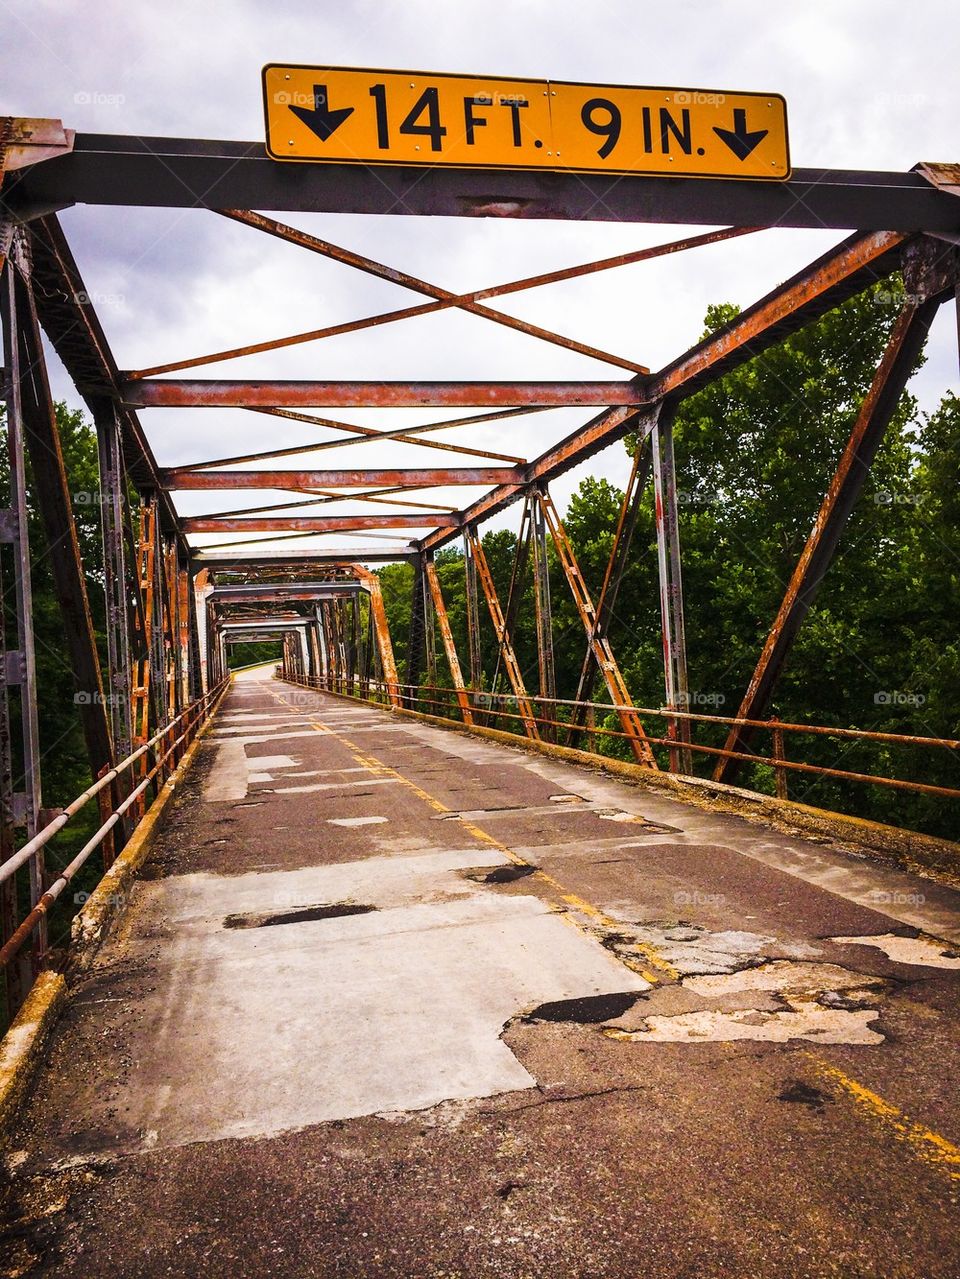 Route 66 bridge